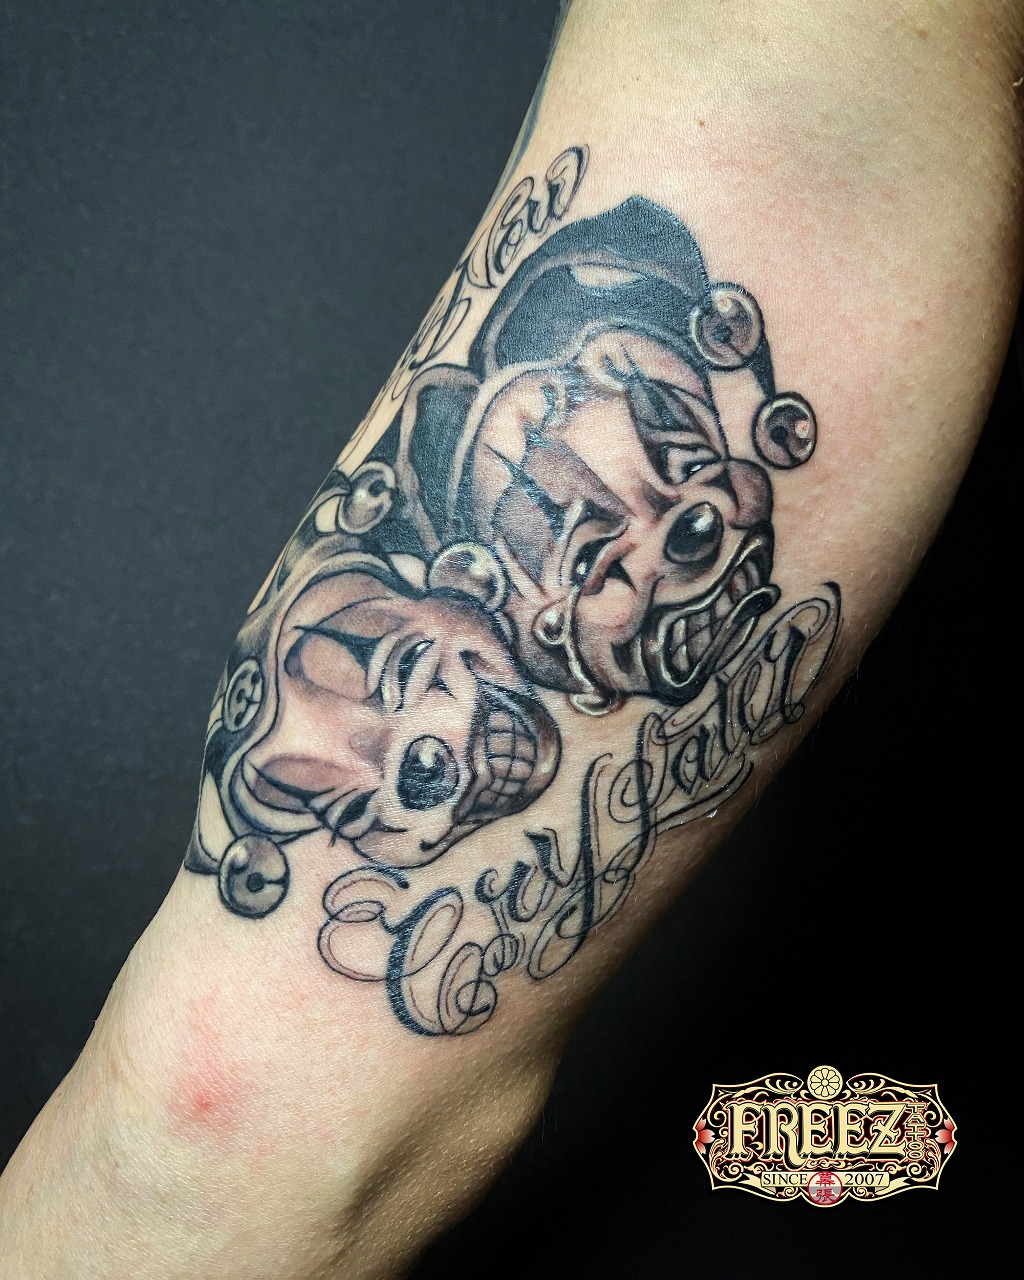 二の腕にピエロのツーフェイスタトゥーtattoo 千葉幕張刺青irezumi 千葉女性彫師sao 千葉タトゥーは千葉市花見川区幕張本郷のfree Z Tattoo フリーズタトゥー